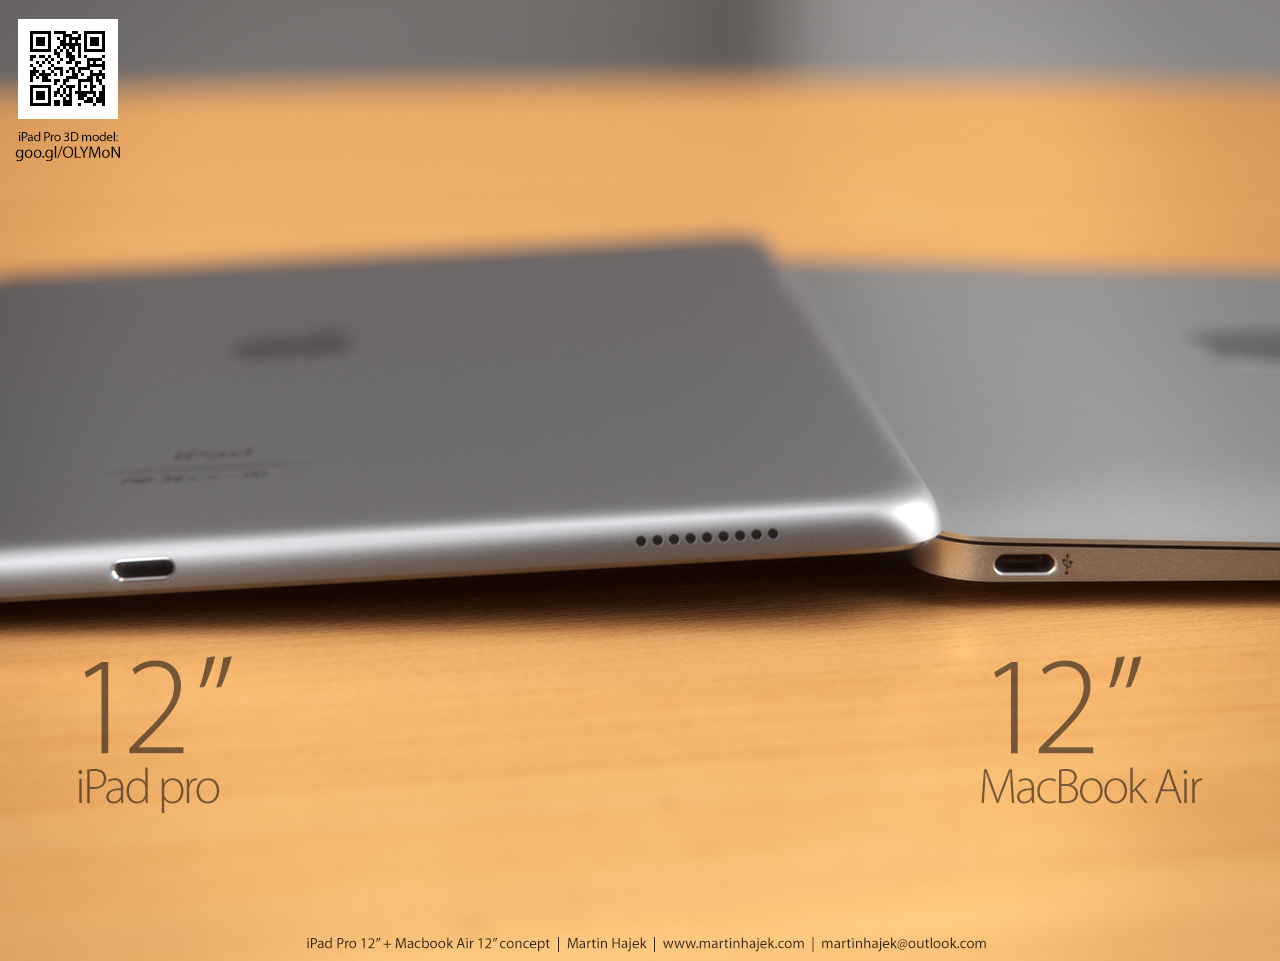 Это  только концепт, 12-дюймовой планшетки Apple пока не выпускала. Но выглядит... неплохо, согласитесь?